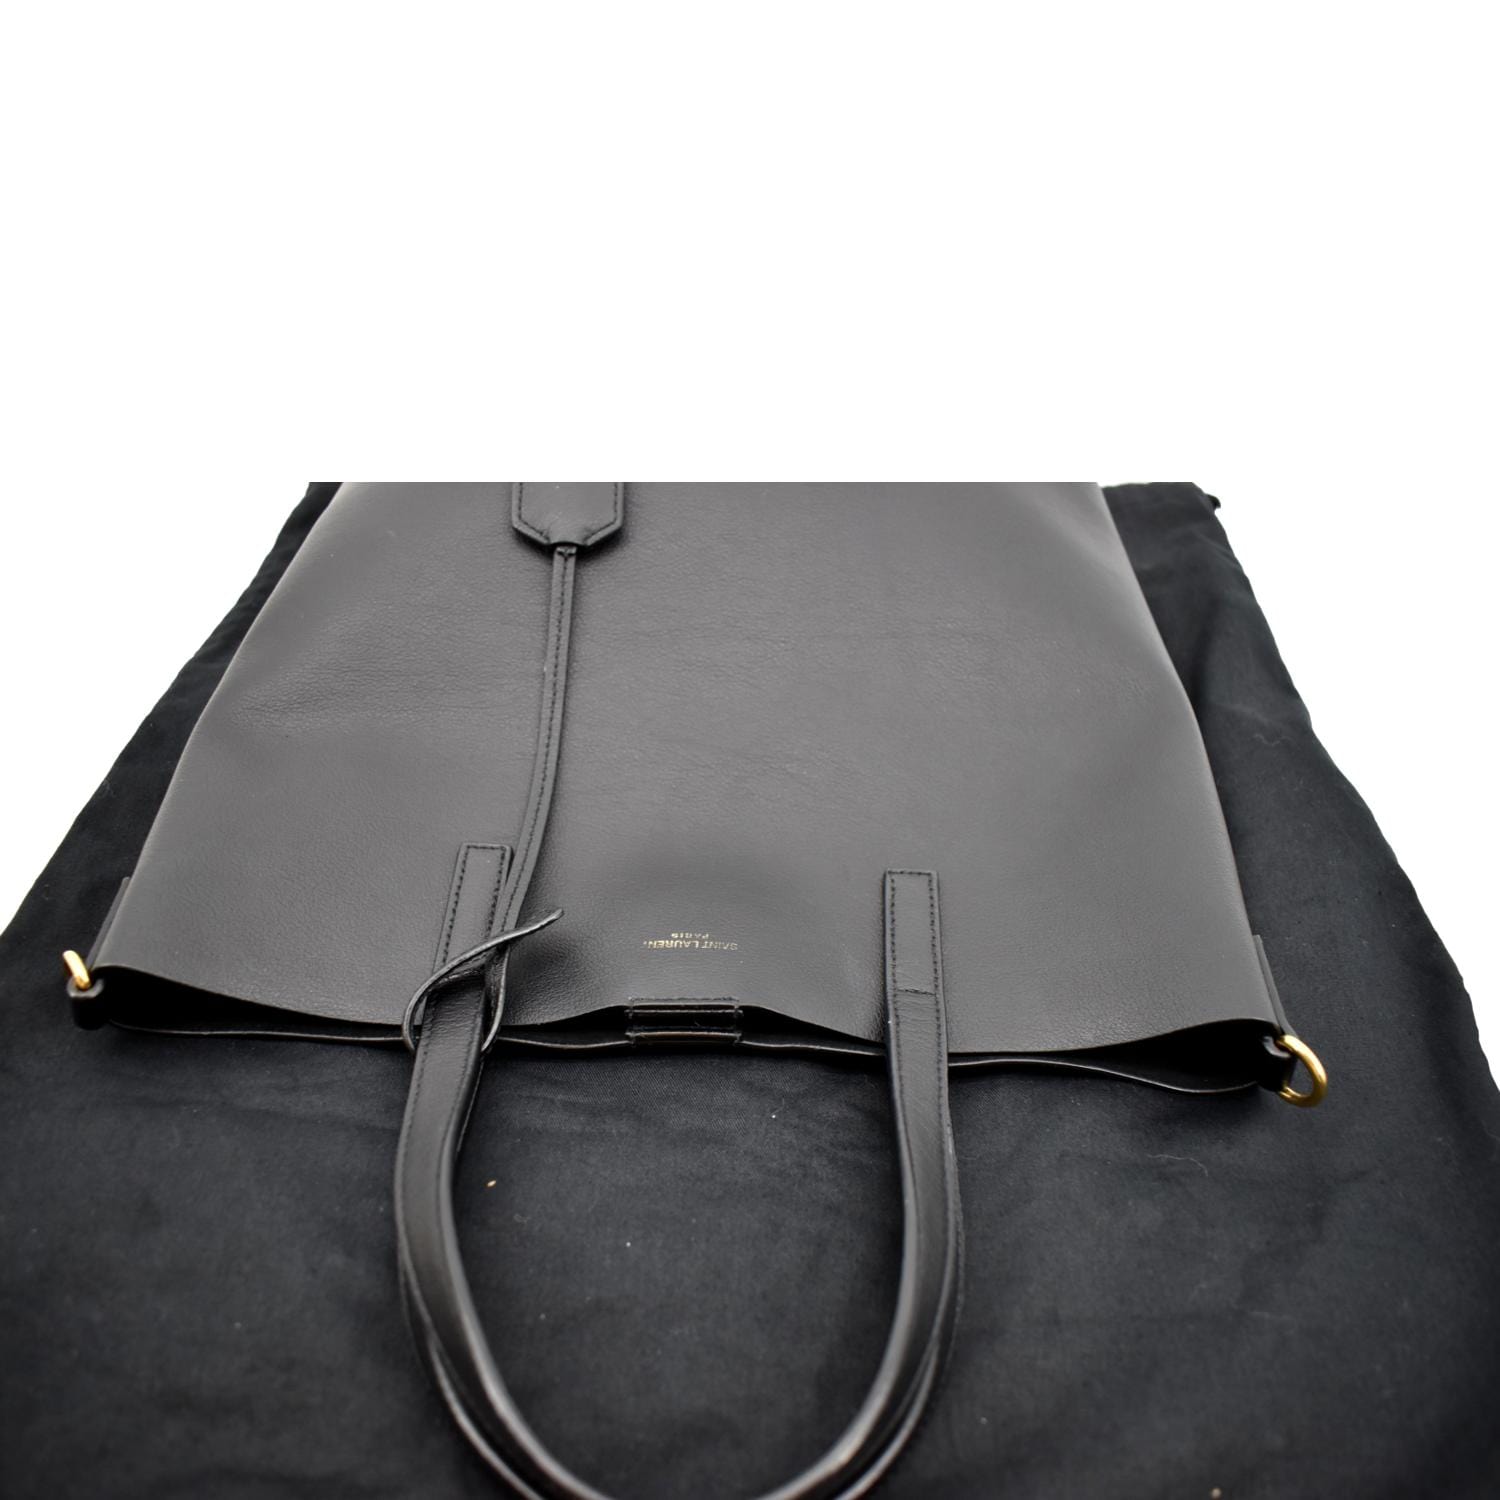 Saint Laurent Shopping Saint Laurent E/W Tote Bag - Black - One Size